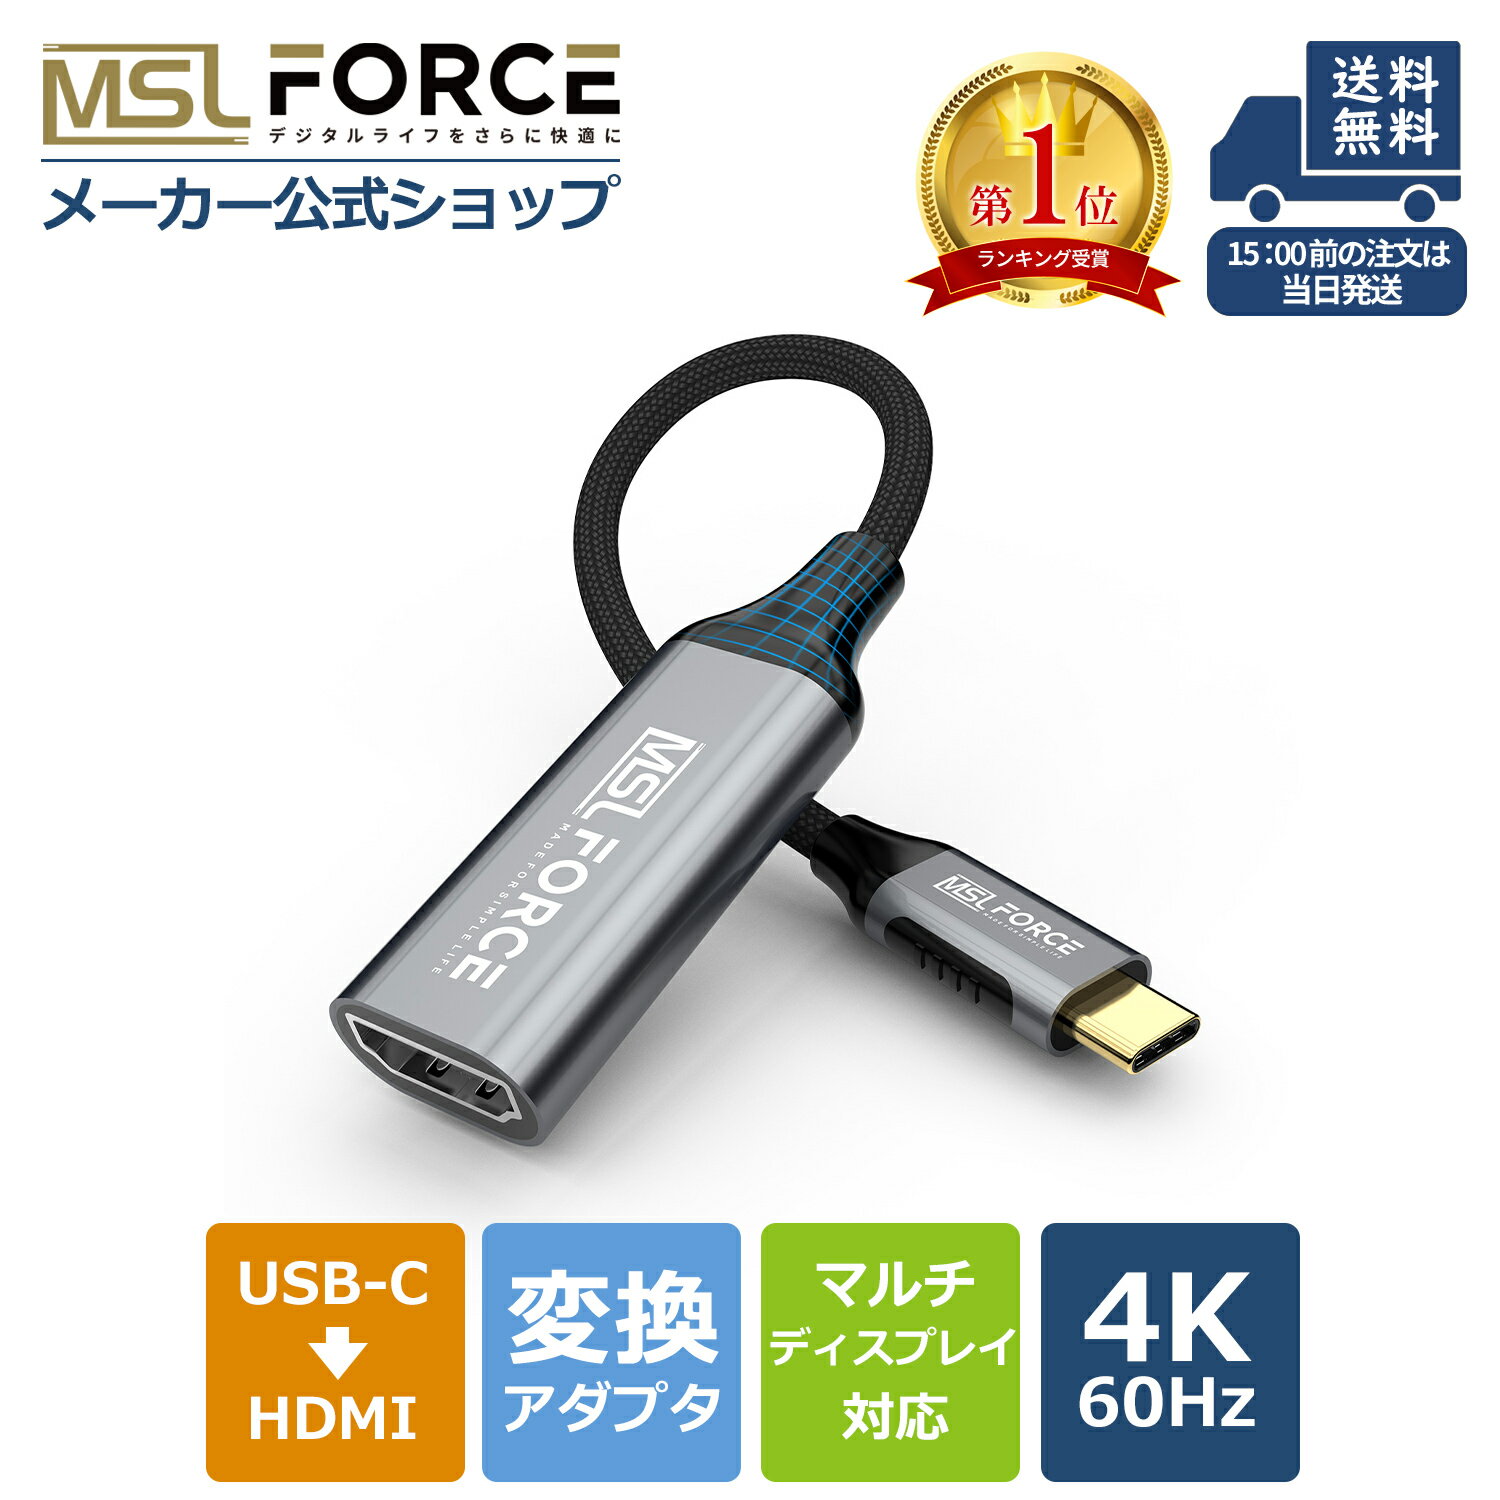 USB HDMIアダプタ [ 高解像度 1080p ] USB 2.0 to HDMI 変換 アダプタ 「ドライバー内蔵」 usb hdmi 変換 ケーブル 音声出力 ディスプレイアダプタ Windows XP / 7 / 8 / 10 / 11 / Mac対応 安定出力 コンパクト